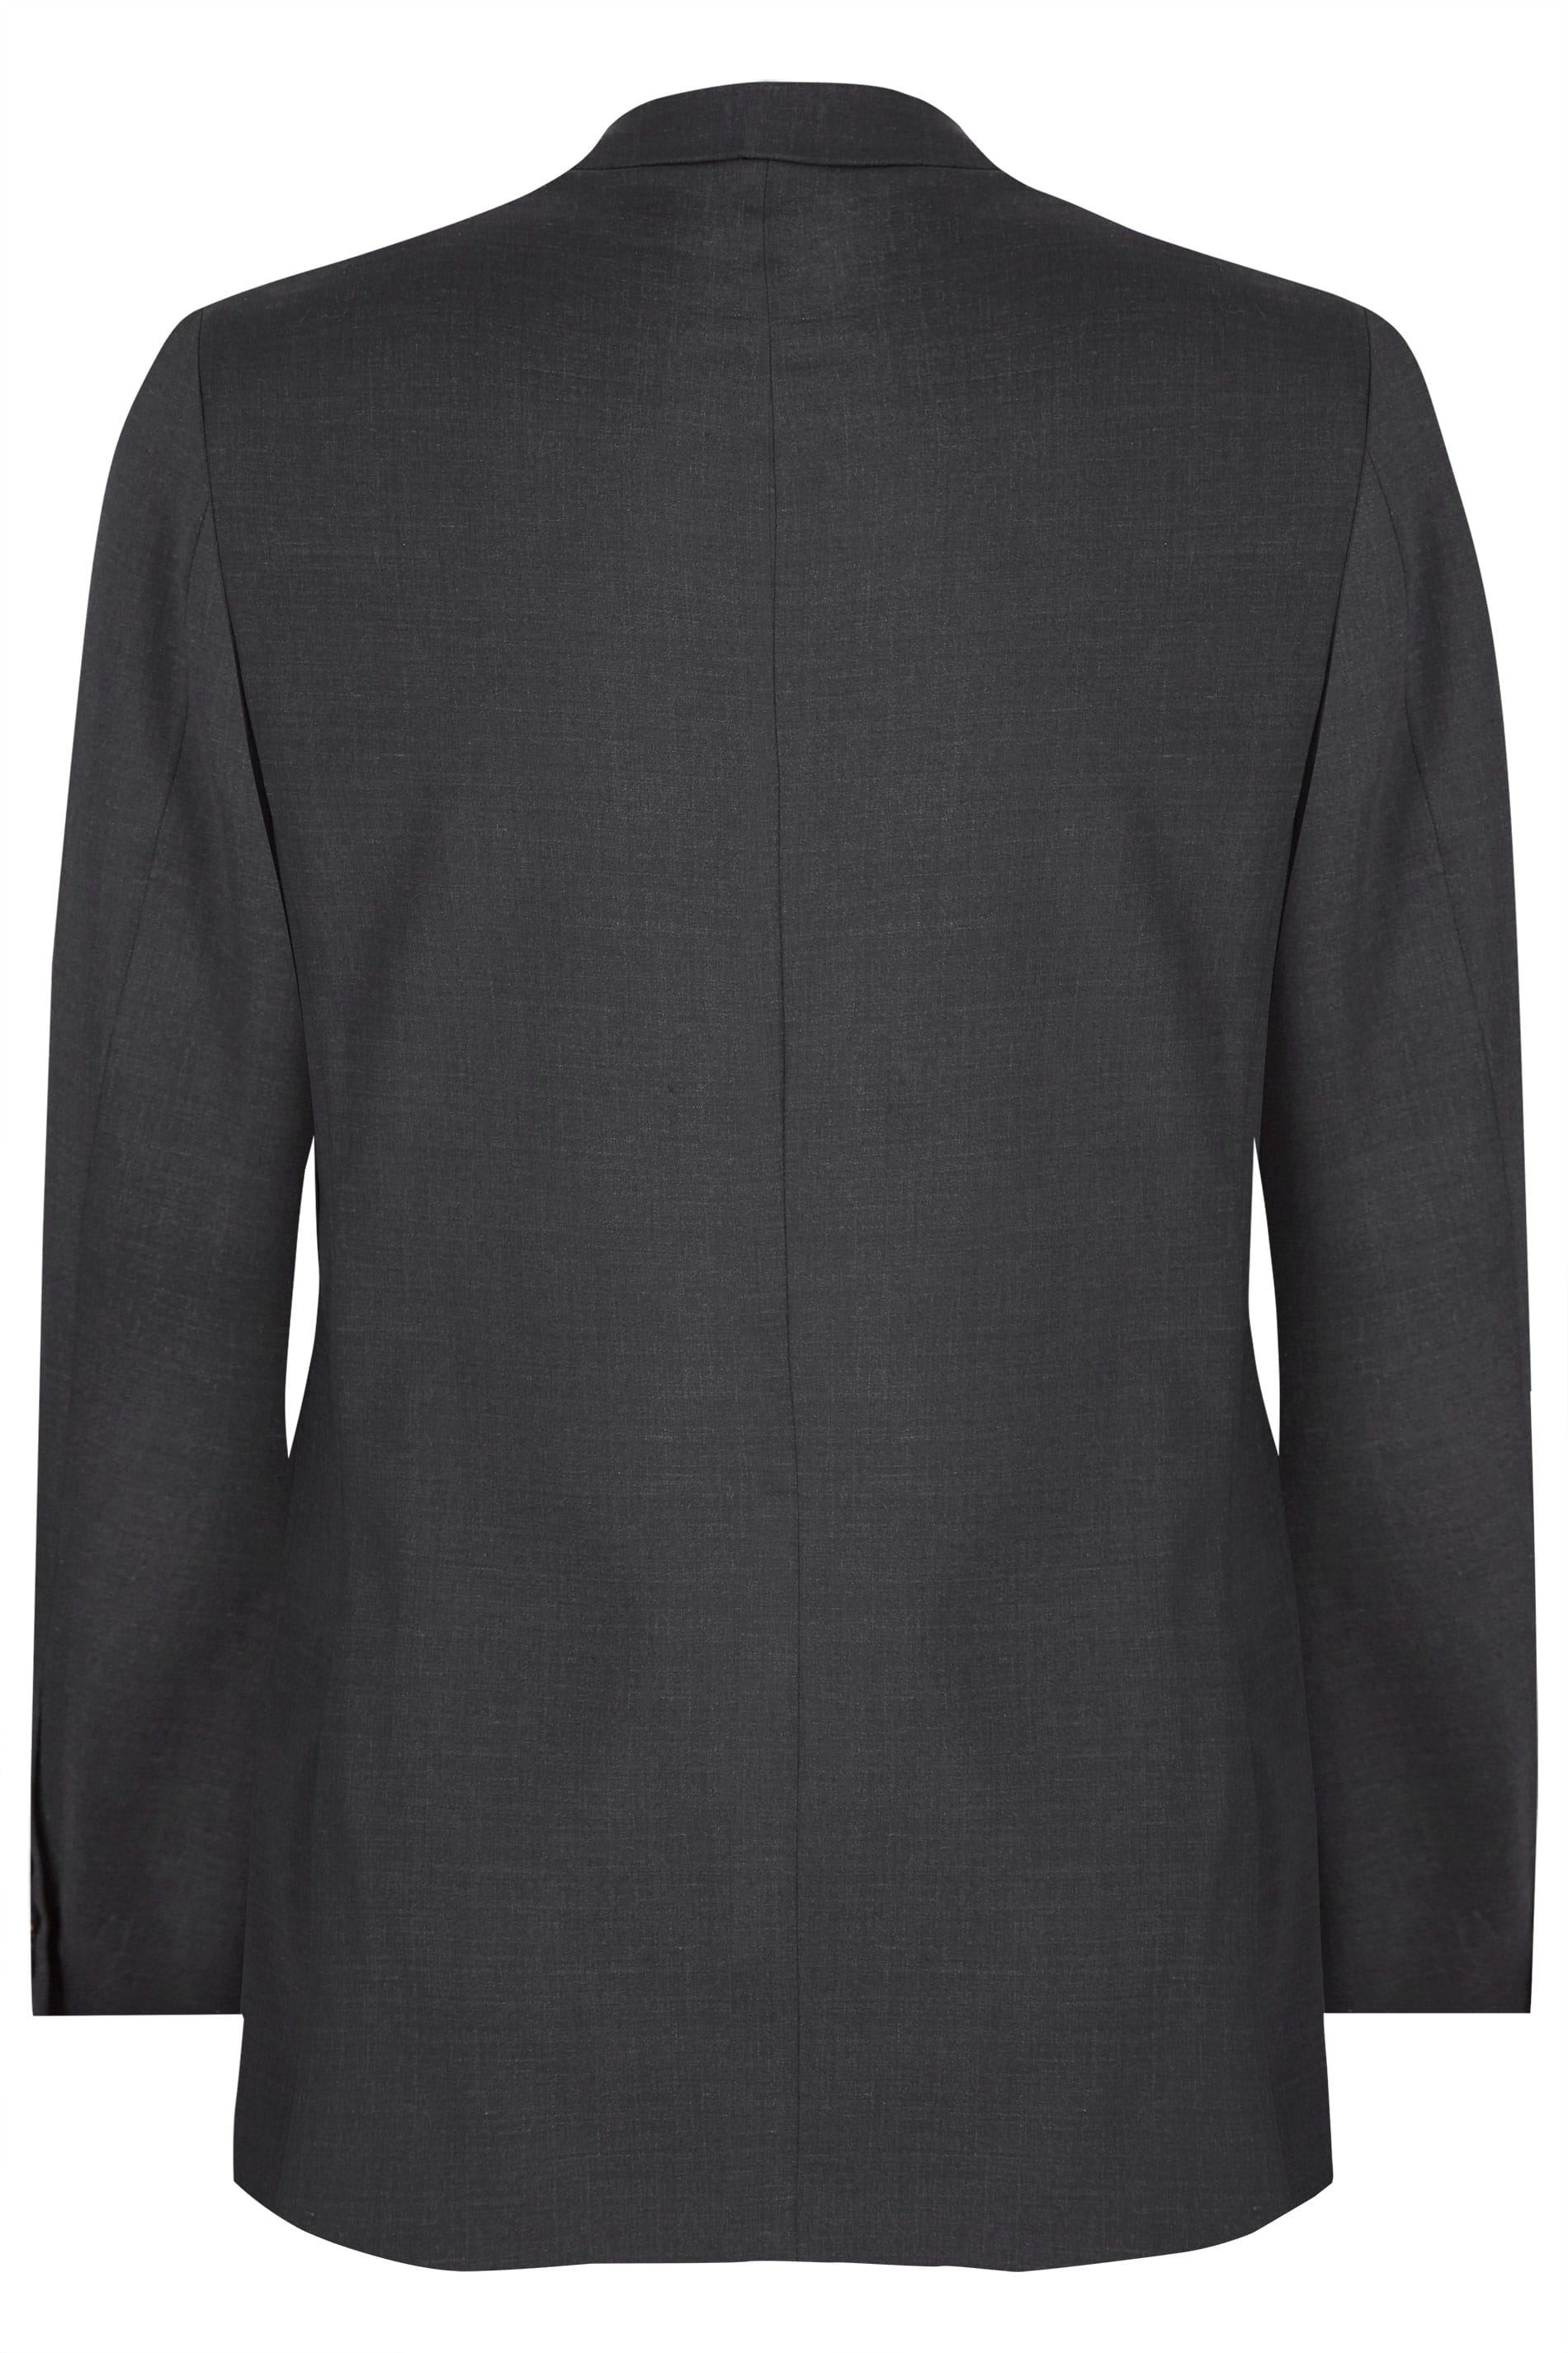 BadRhino Charcoal Grey Regular Suit Jacket | Sizes 44